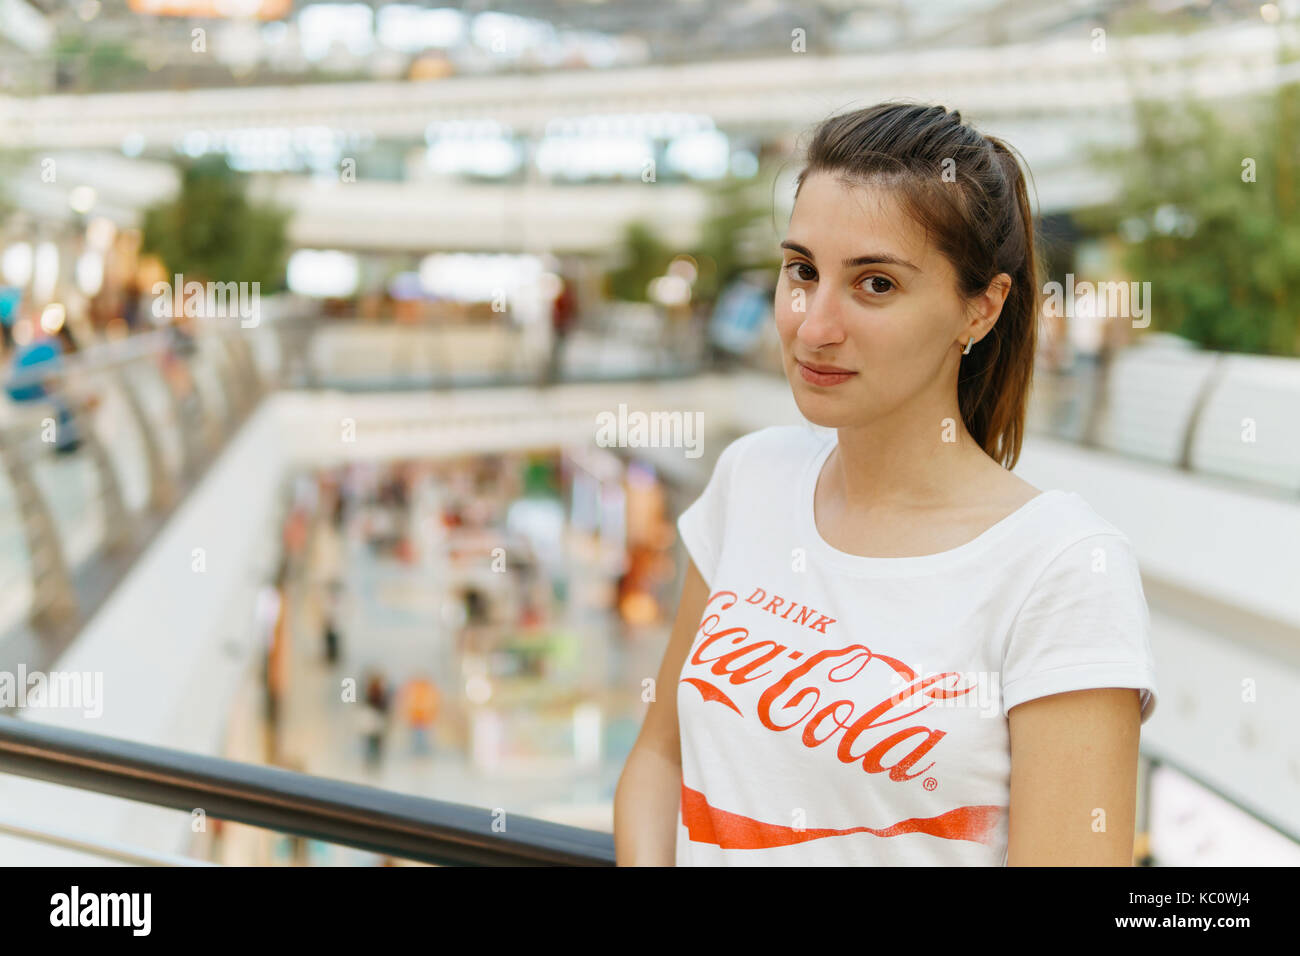 Lissabon, Portugal - 10 AUGUST, 2017: Junge Mädchen mit weißem T-Shirt mit "Coca-Cola" Slogan Anmelden modernes Einkaufszentrum. Stockfoto